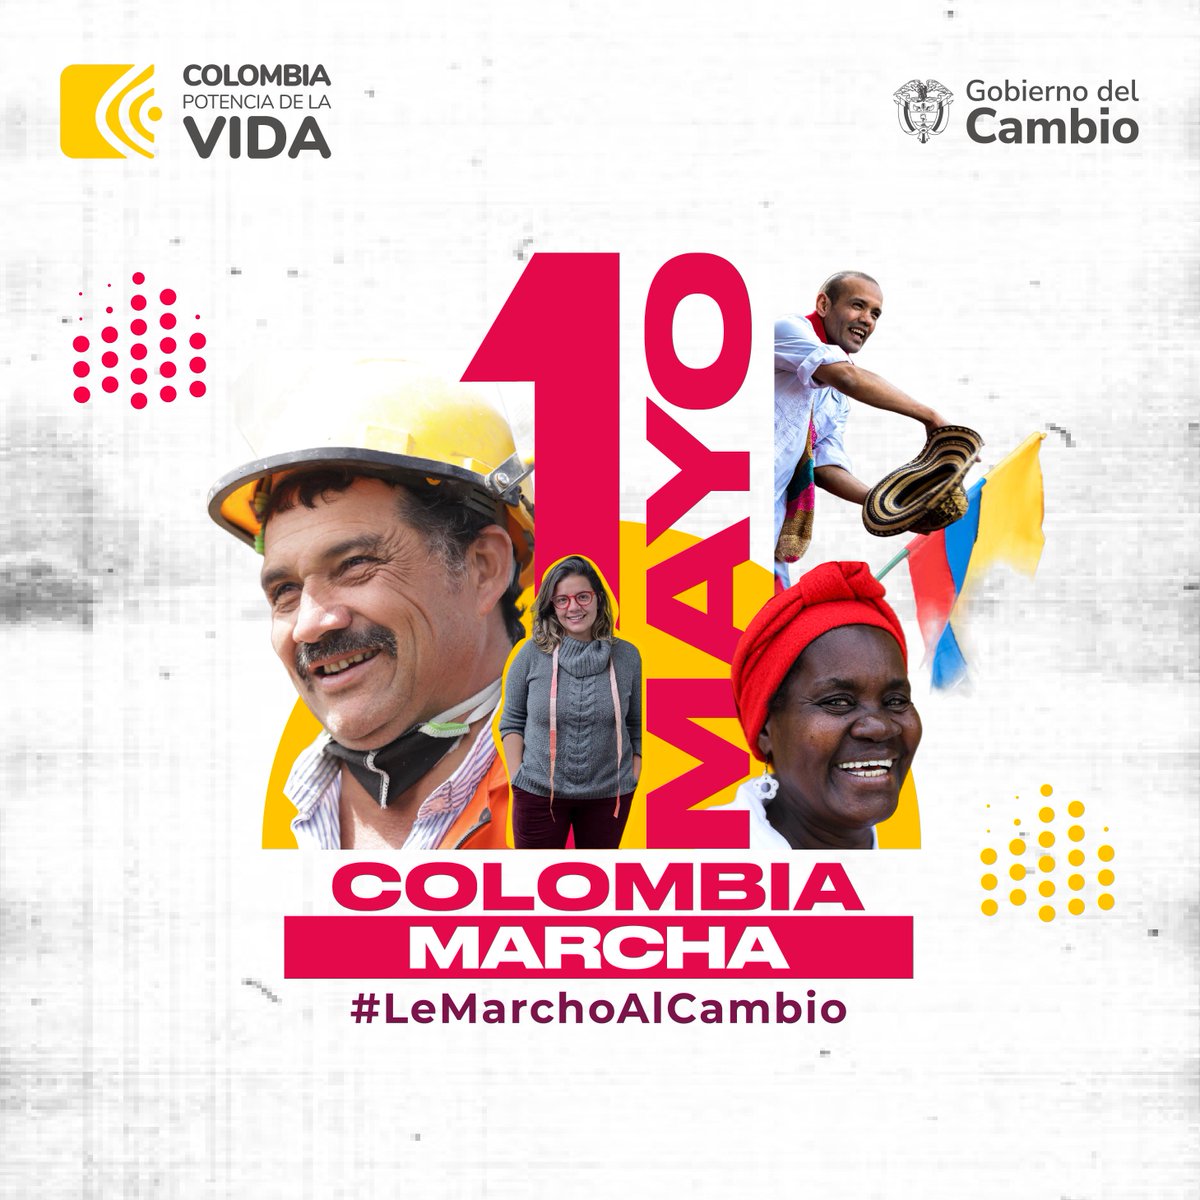 Este 1 de mayo #LeMarchoAlCambio.
Juntos nos moveremos por los derechos de los colombianos, porque solo con un pueblo vivo podremos hacer de Colombia una Potencia Mundial de la Vida.
A las calles este miércoles por el trabajo, la vida, la Paz, la democracia y el mandato popular.